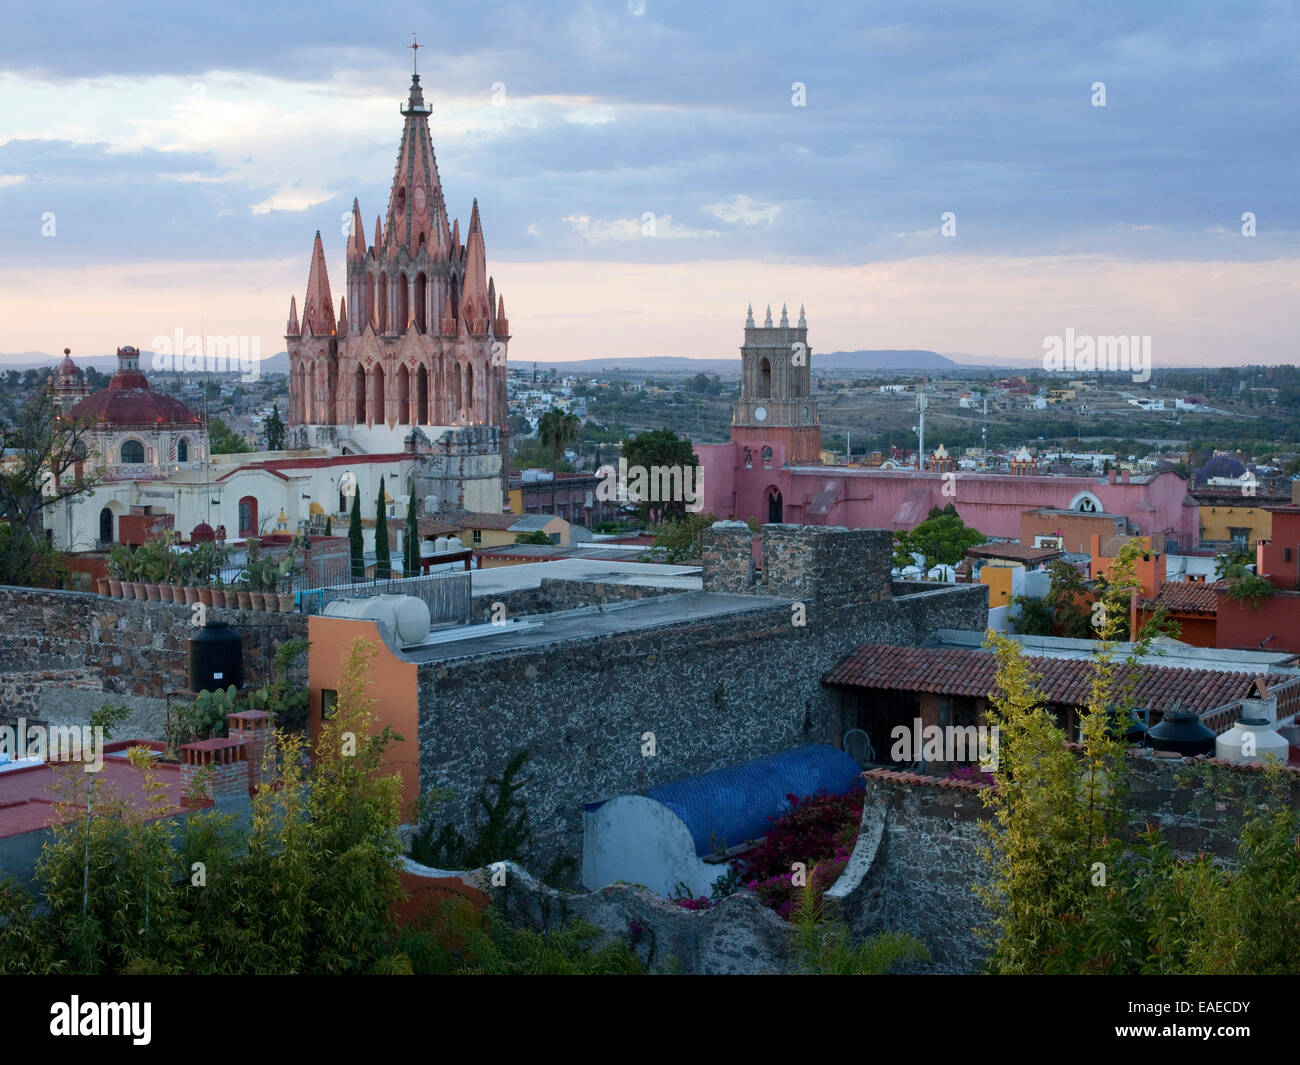 view of San Miguel, Mexico with The Parroquia de San Miguel Arcangel or parish church in San Miguel de Allende Stock Photo